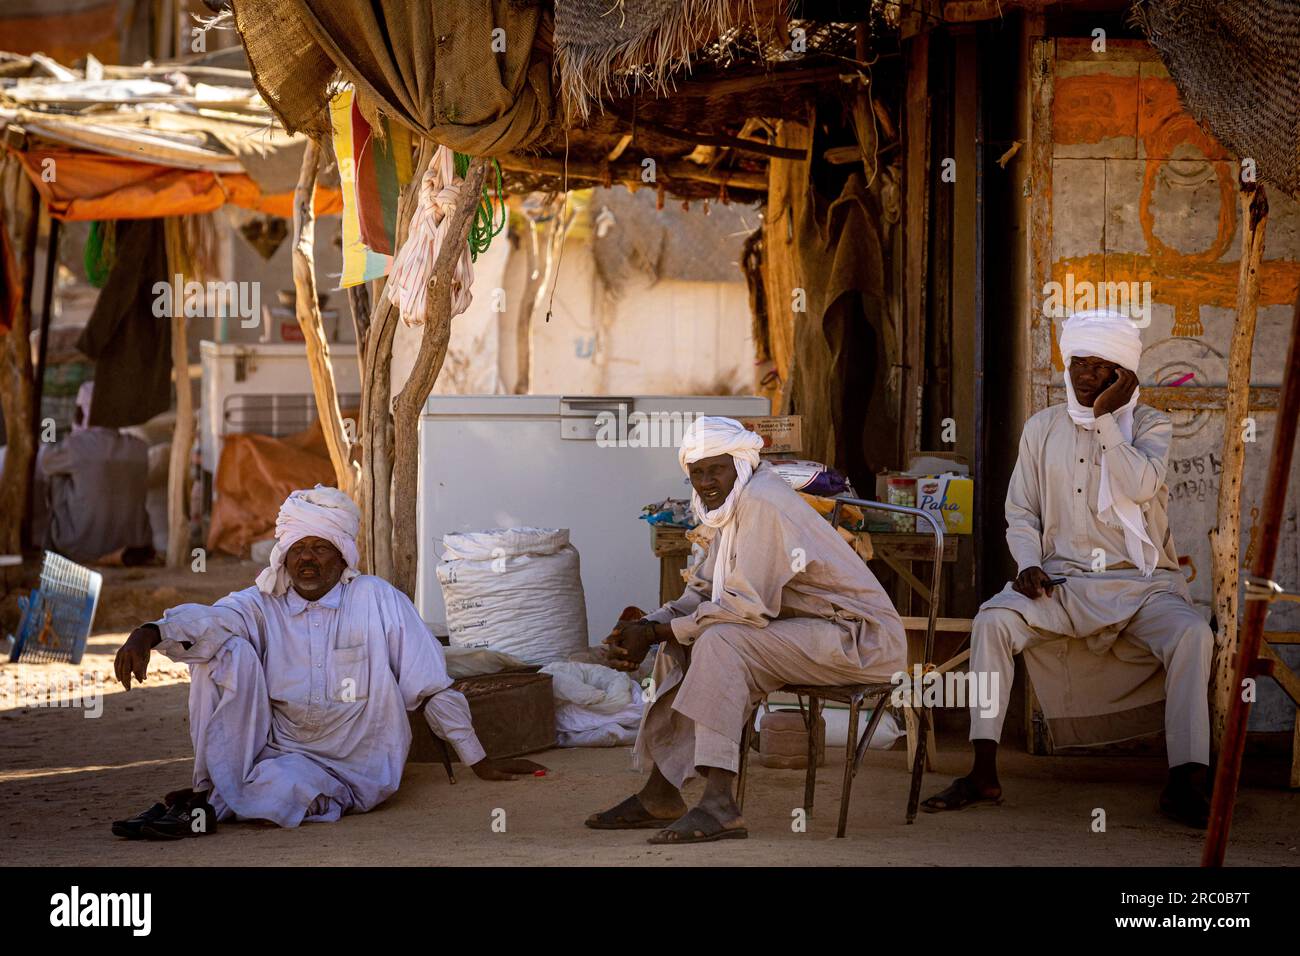 Dans le marché rural du Tchad, trois hommes vêtus de vêtements traditionnels et de turbans font du commerce sous un hangar rustique, mettant en valeur la culture locale. Banque D'Images